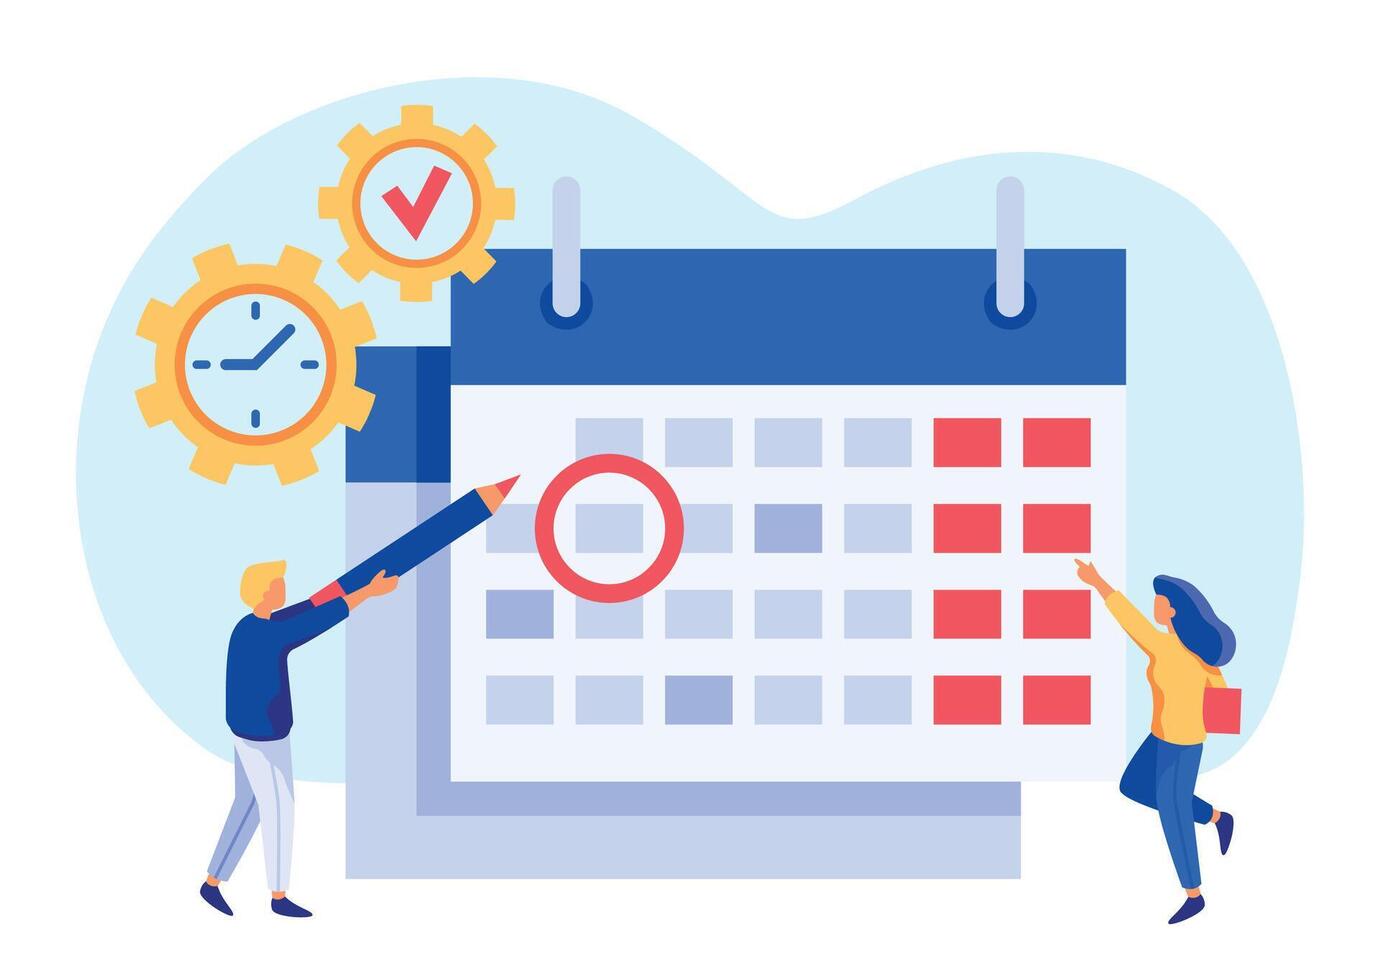 Arbeit Zeit Management. winzig Menschen suchen beim Kalender, Überprüfung wichtig Datum. Mann kreisen Veranstaltung oder geplanter Termin vektor